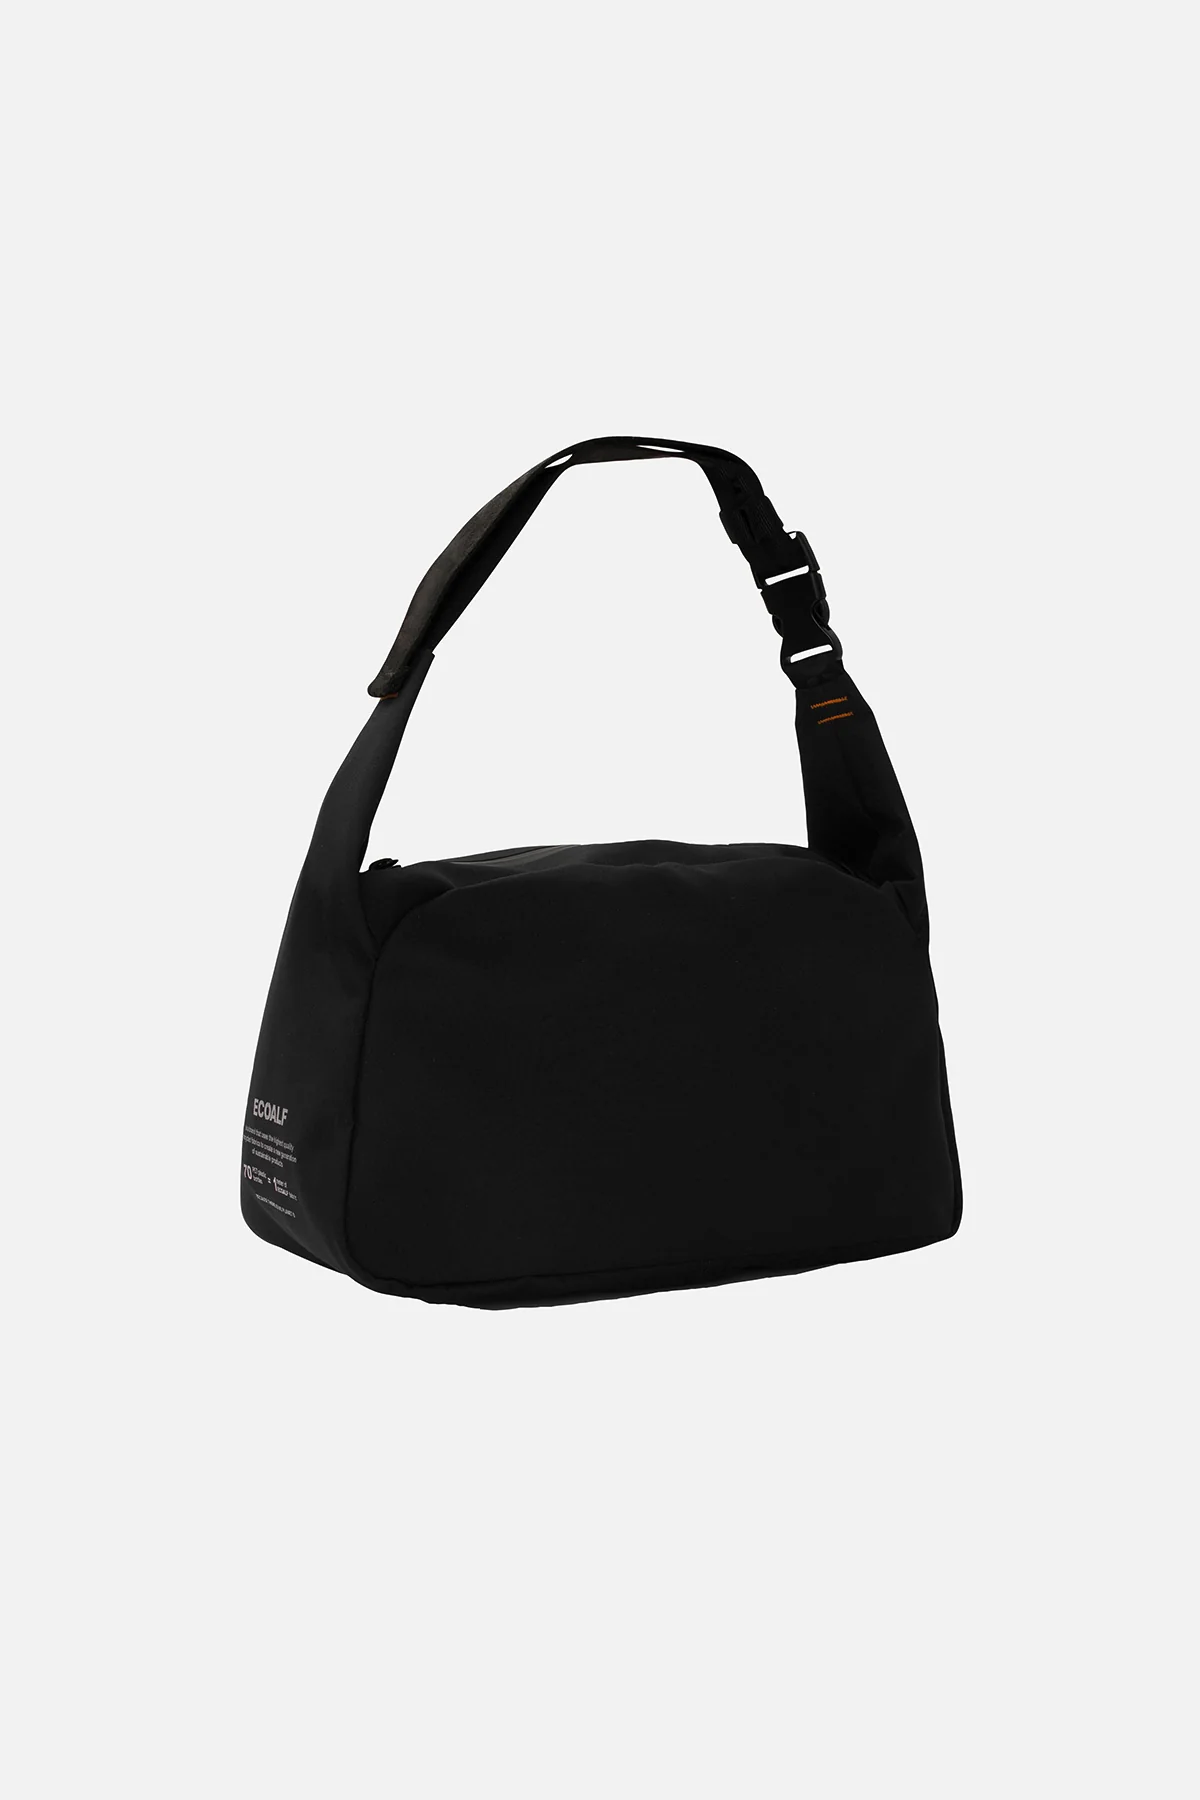 ECOALF bolso color negro con logo lateral